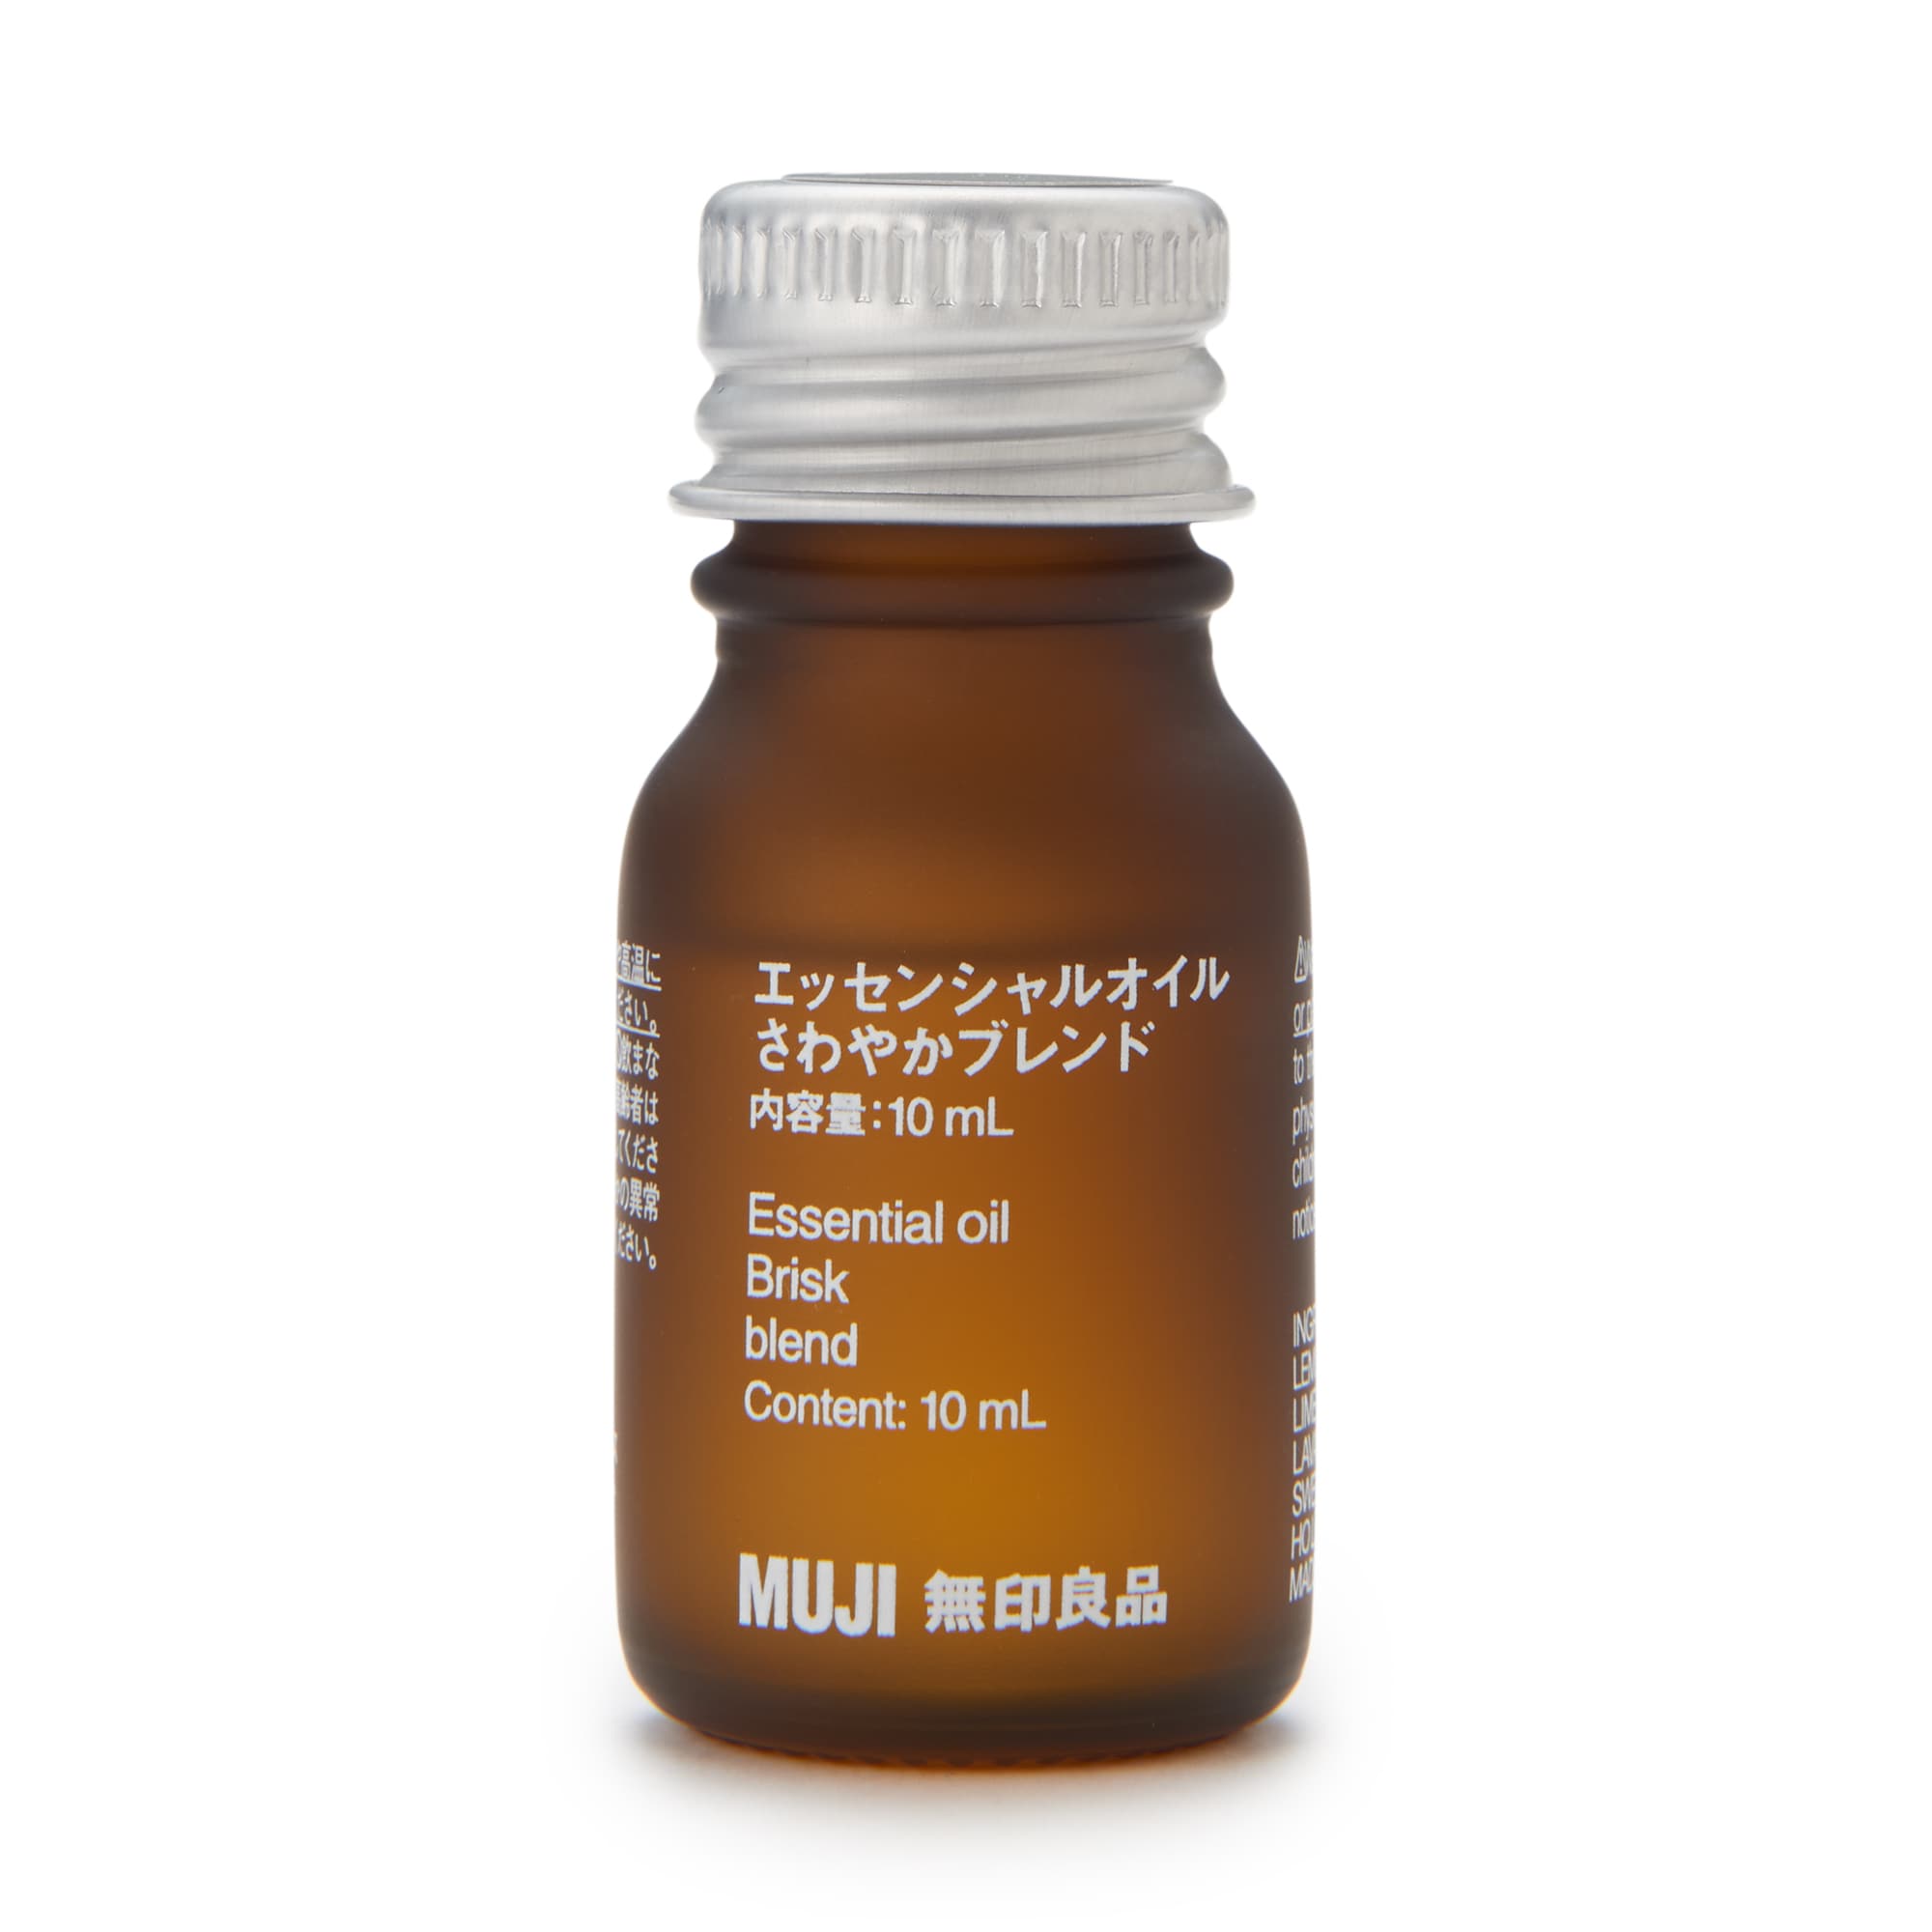 무인양품 일본 천연 아로마 향수 오일 에센셜 오일 10ml 브리스크